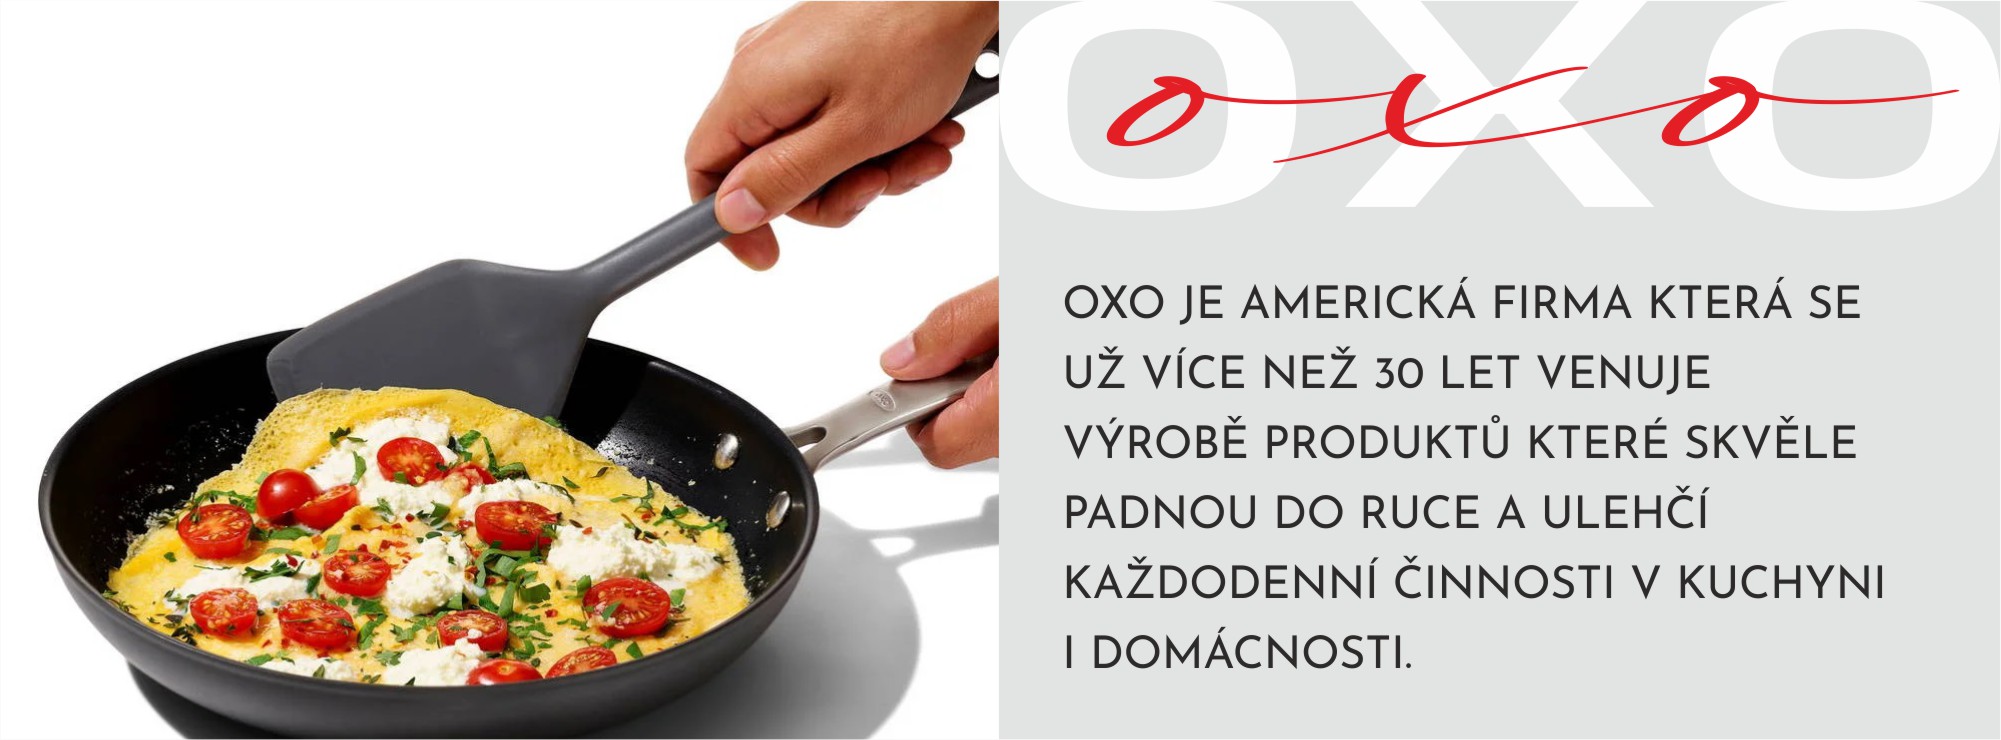 OXO-info-obacačka-CZ